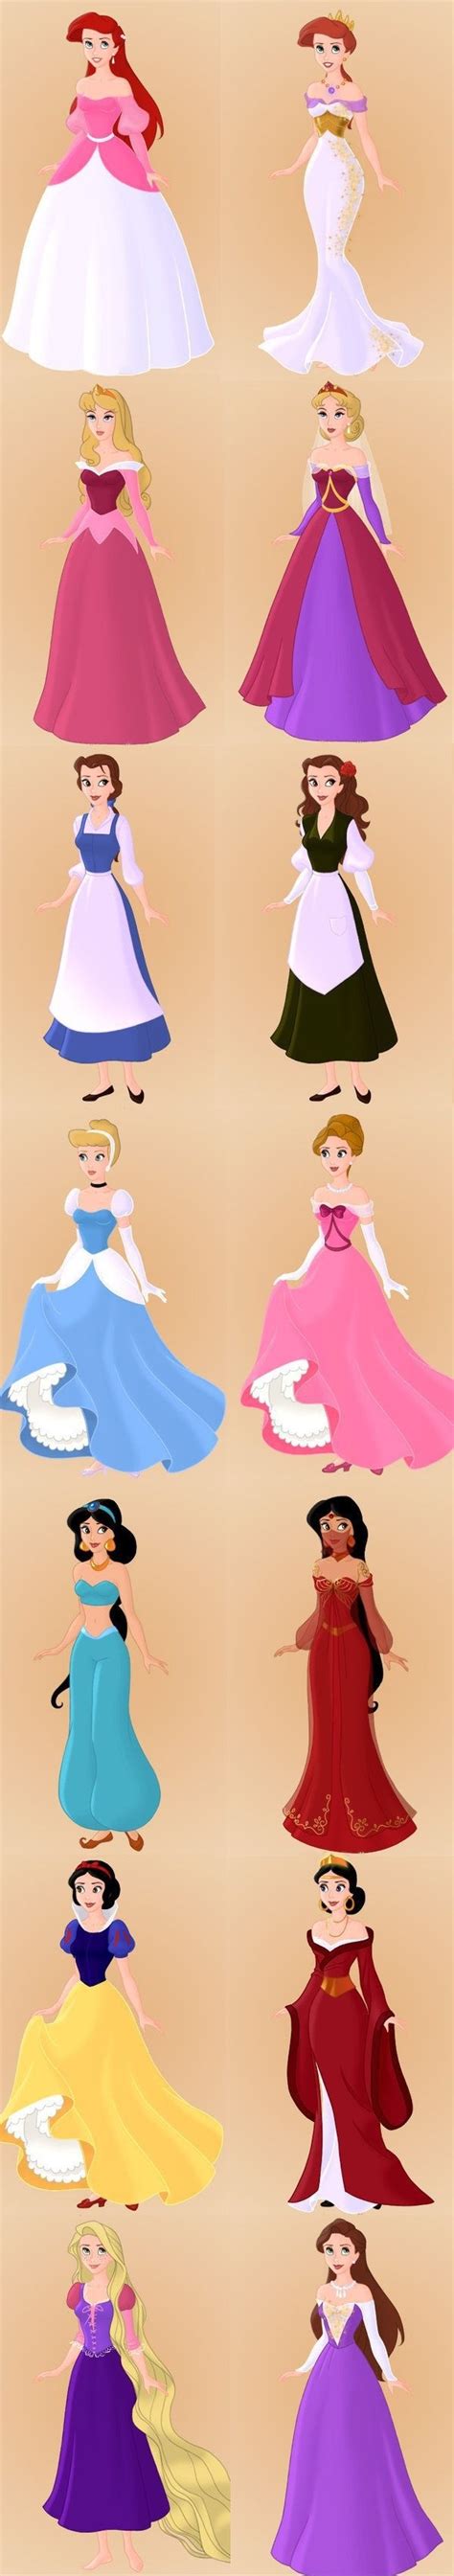 księżniczki disney na Disney art Zszywka pl